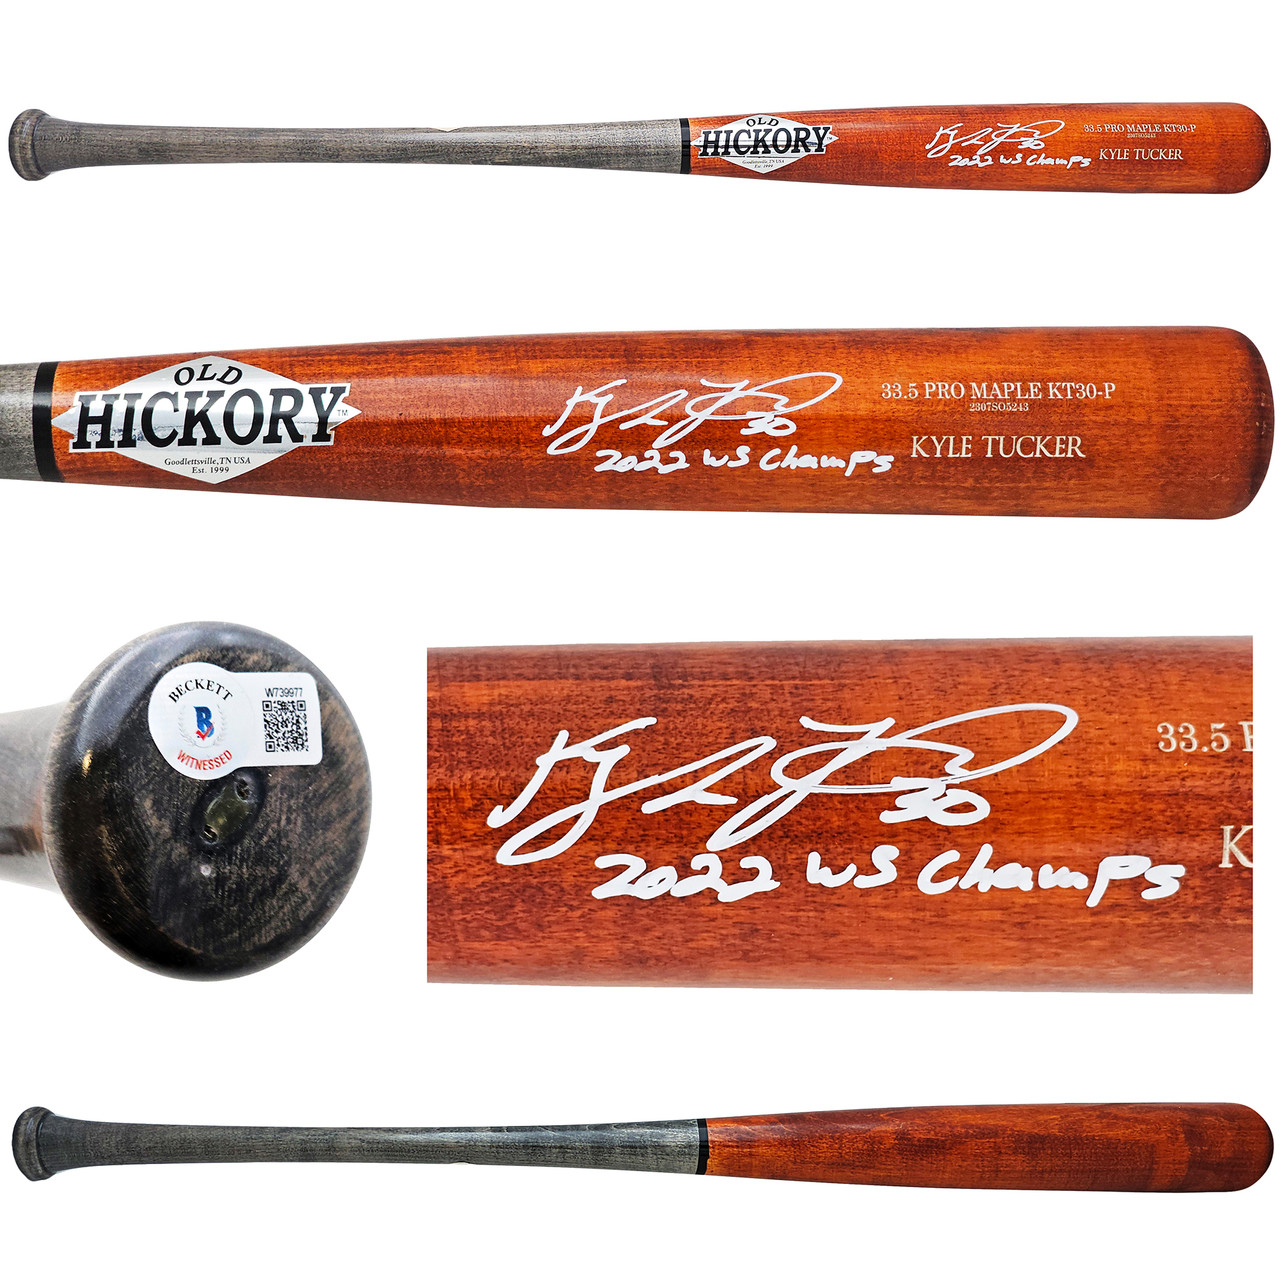 Kyle Tucker Autographed Orange Old Hickory Player Model Bat